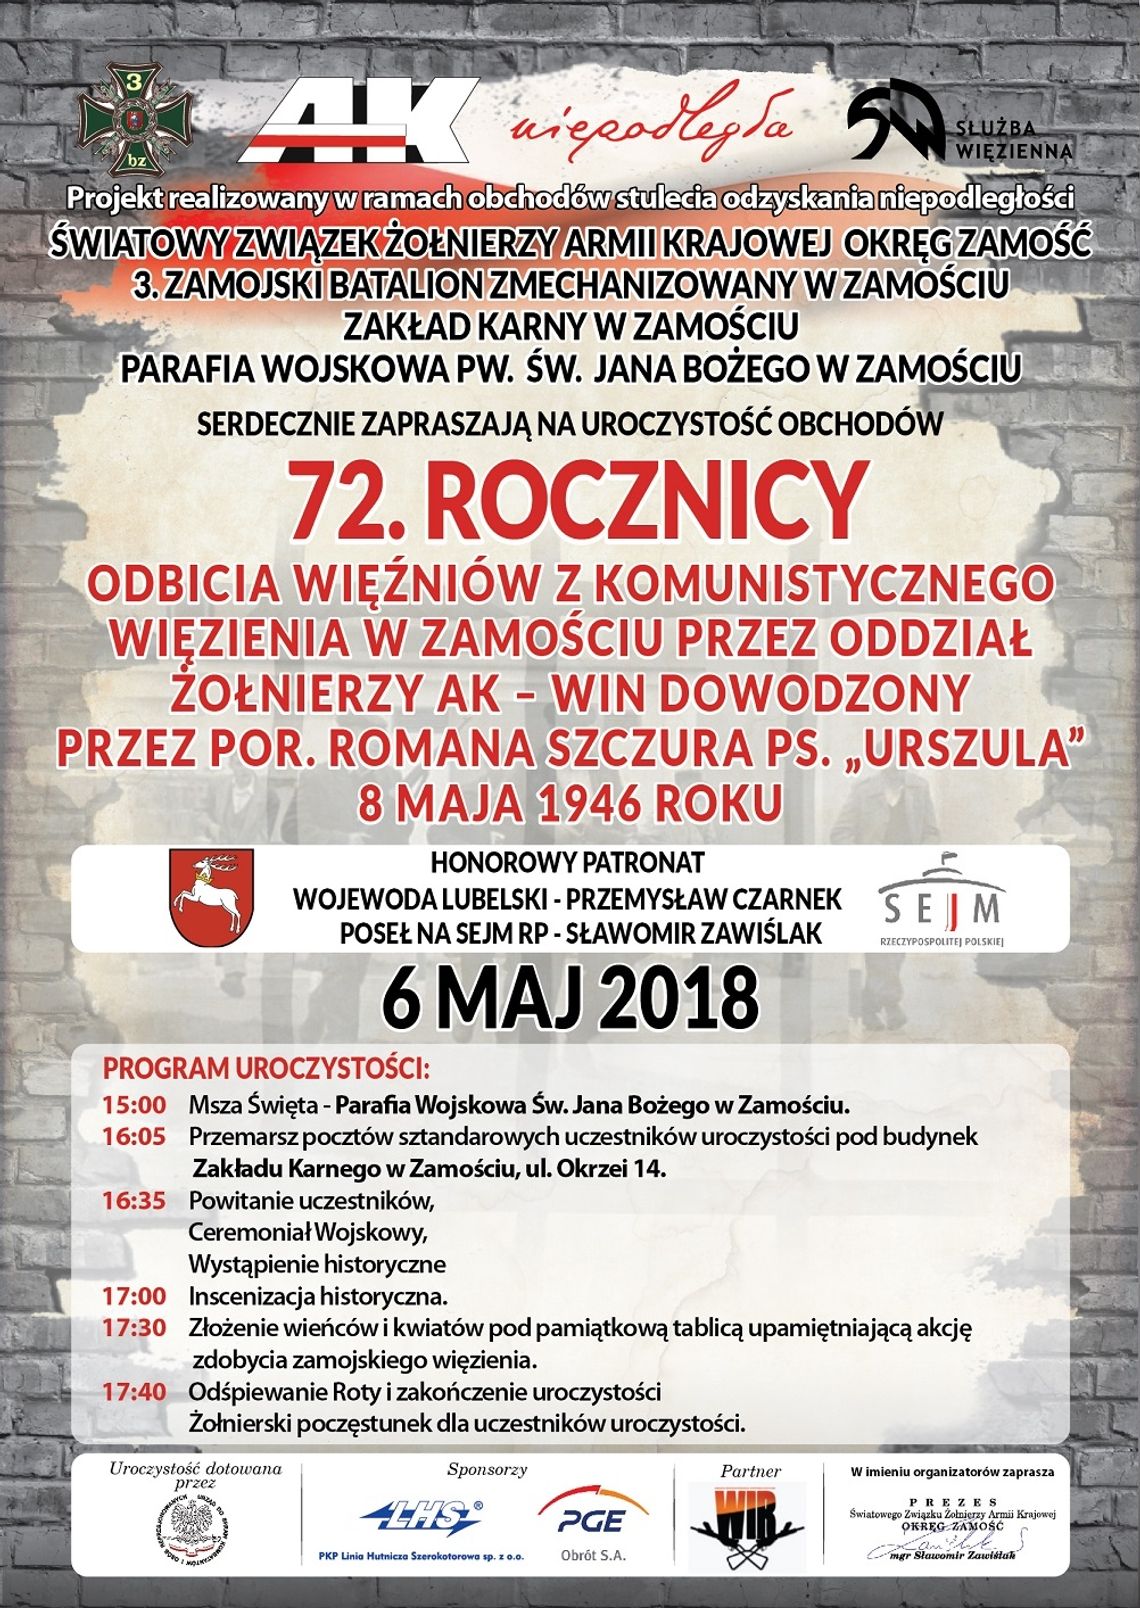 Zaproszenie na 72. rocznicę odbicia więźniów z komunistycznego więzienia w Zamościu